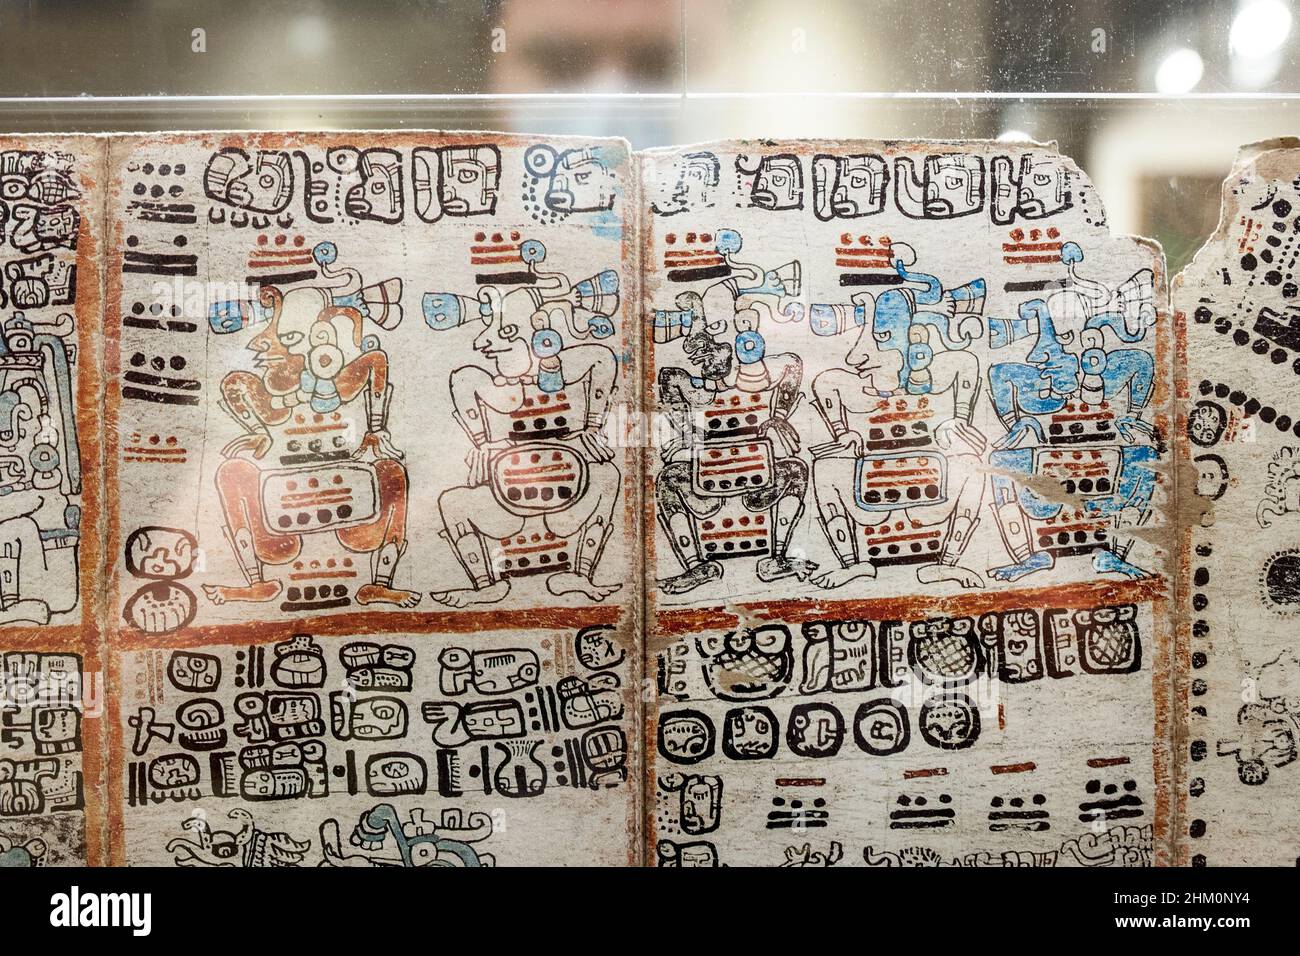 Madrid, Espagne - 11th juillet 2020 : visiteur observant le célèbre Codex Madrid.Rare survivant pré-Columbian Maya livre.Musée des Amériques, Madrid, Espagne Banque D'Images